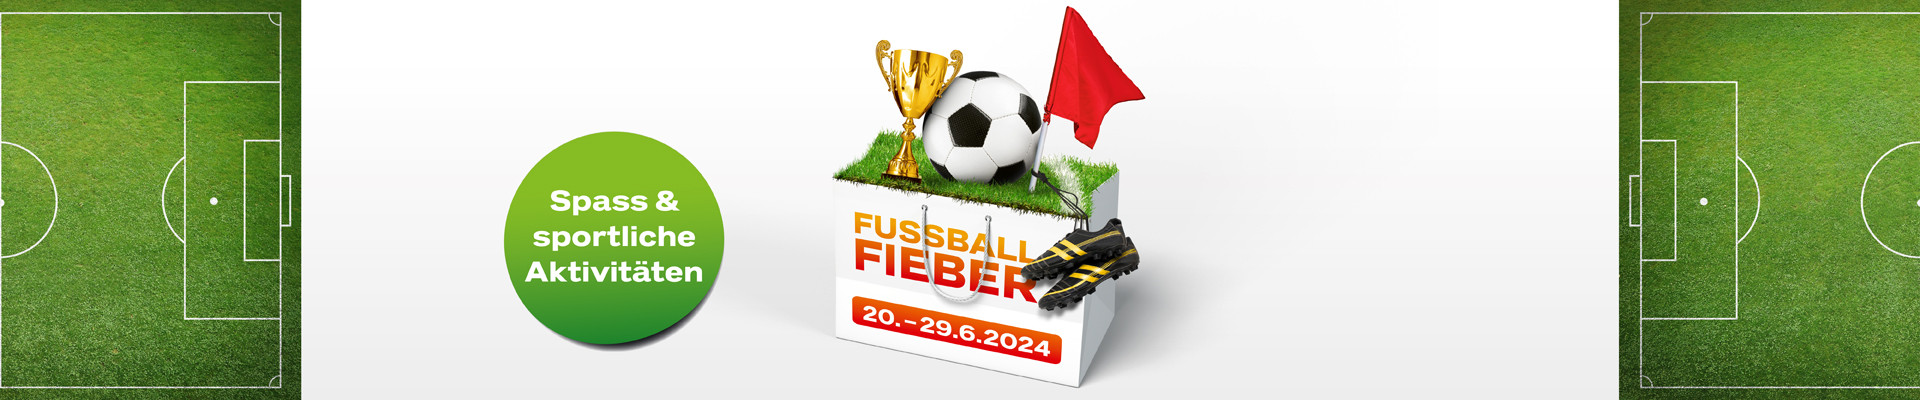 Fussball-Fieber